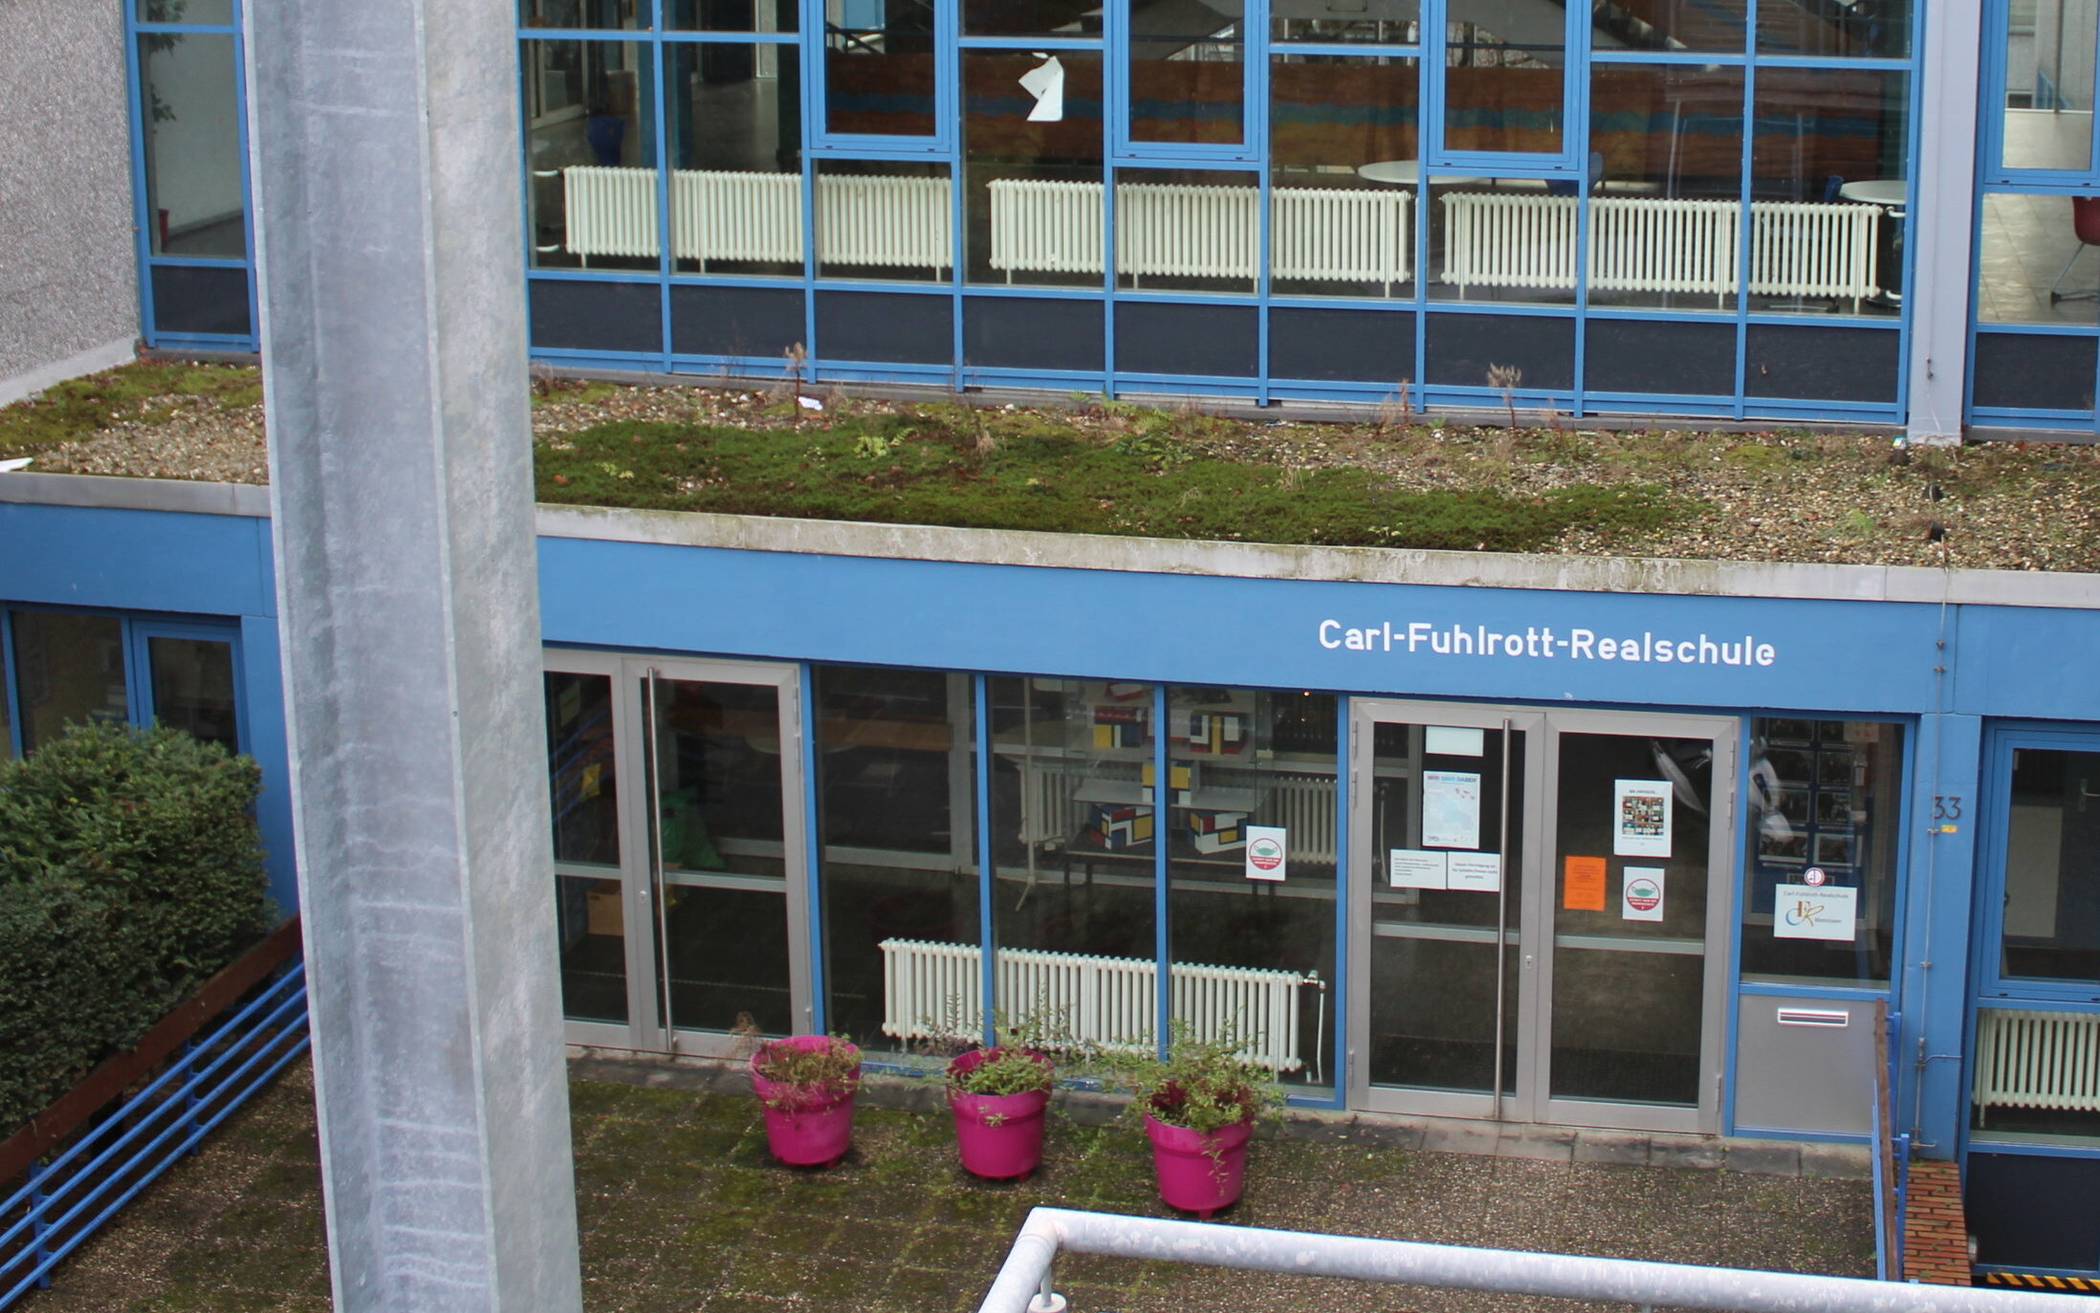  Die Carl-Fuhlrott-Realschule soll einer Gesamtschule weichen.   